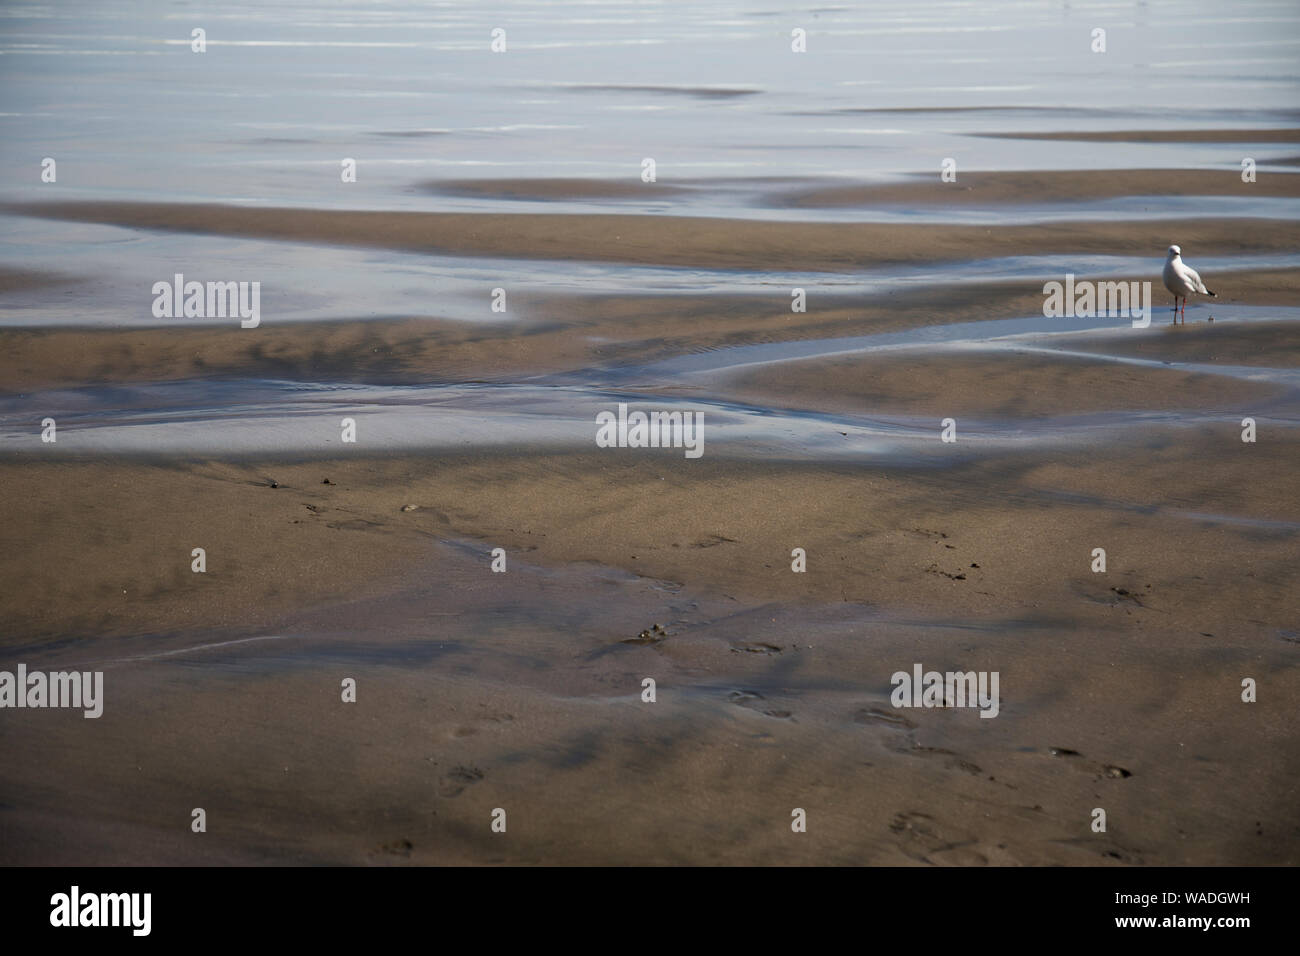 Unico seagull permanente sulla spiaggia di sabbia nera a bassa marea. Acqua splendente, increspature nella sabbia. Porta i sentimenti e le emozioni di lonely, riflettenti la pace Foto Stock